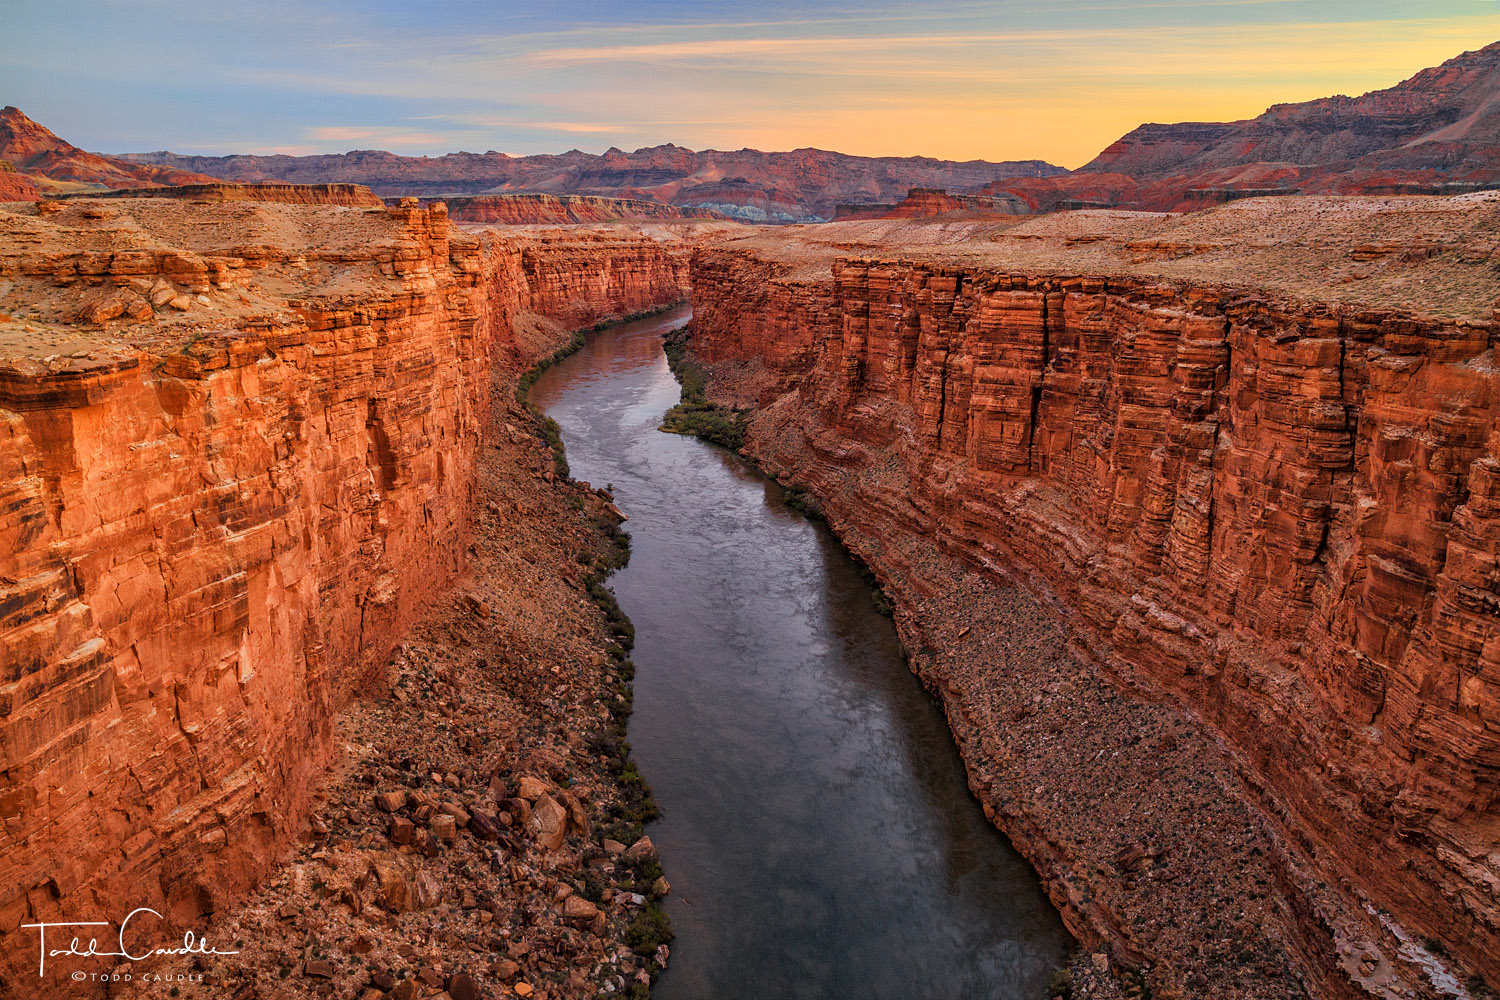 The Colorado River cuts through Marble Canyon below Navajo Bridge at Grand Canyon National Park.